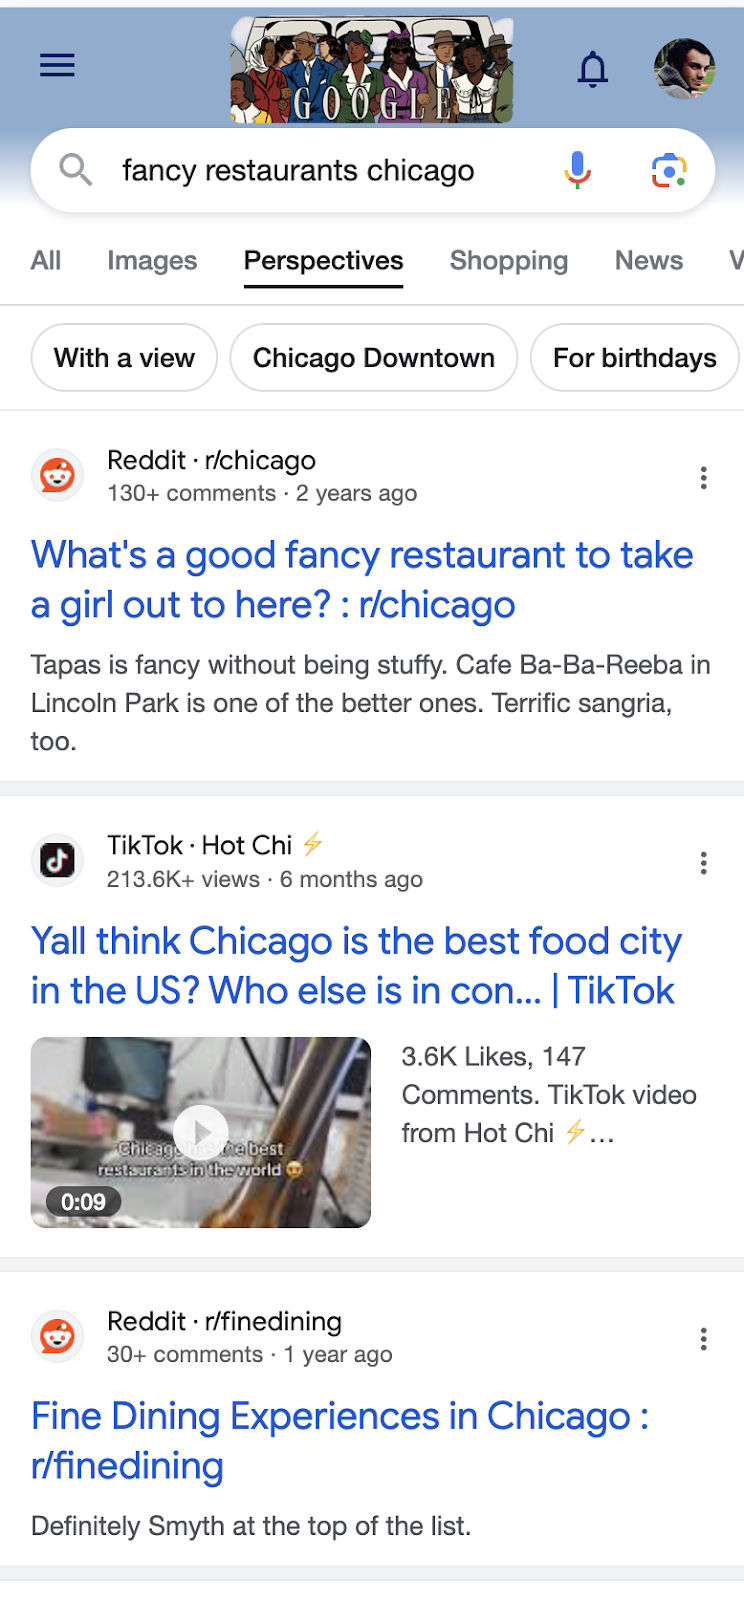 Google Perspectives für die Suchanfrage "fancy restaurants in chicago". Zu sehen sind normale Suchergebnisse für Reddit und TikTok, wobei das Ergebnis für TikTok auch eine Videoeinbindung hat.